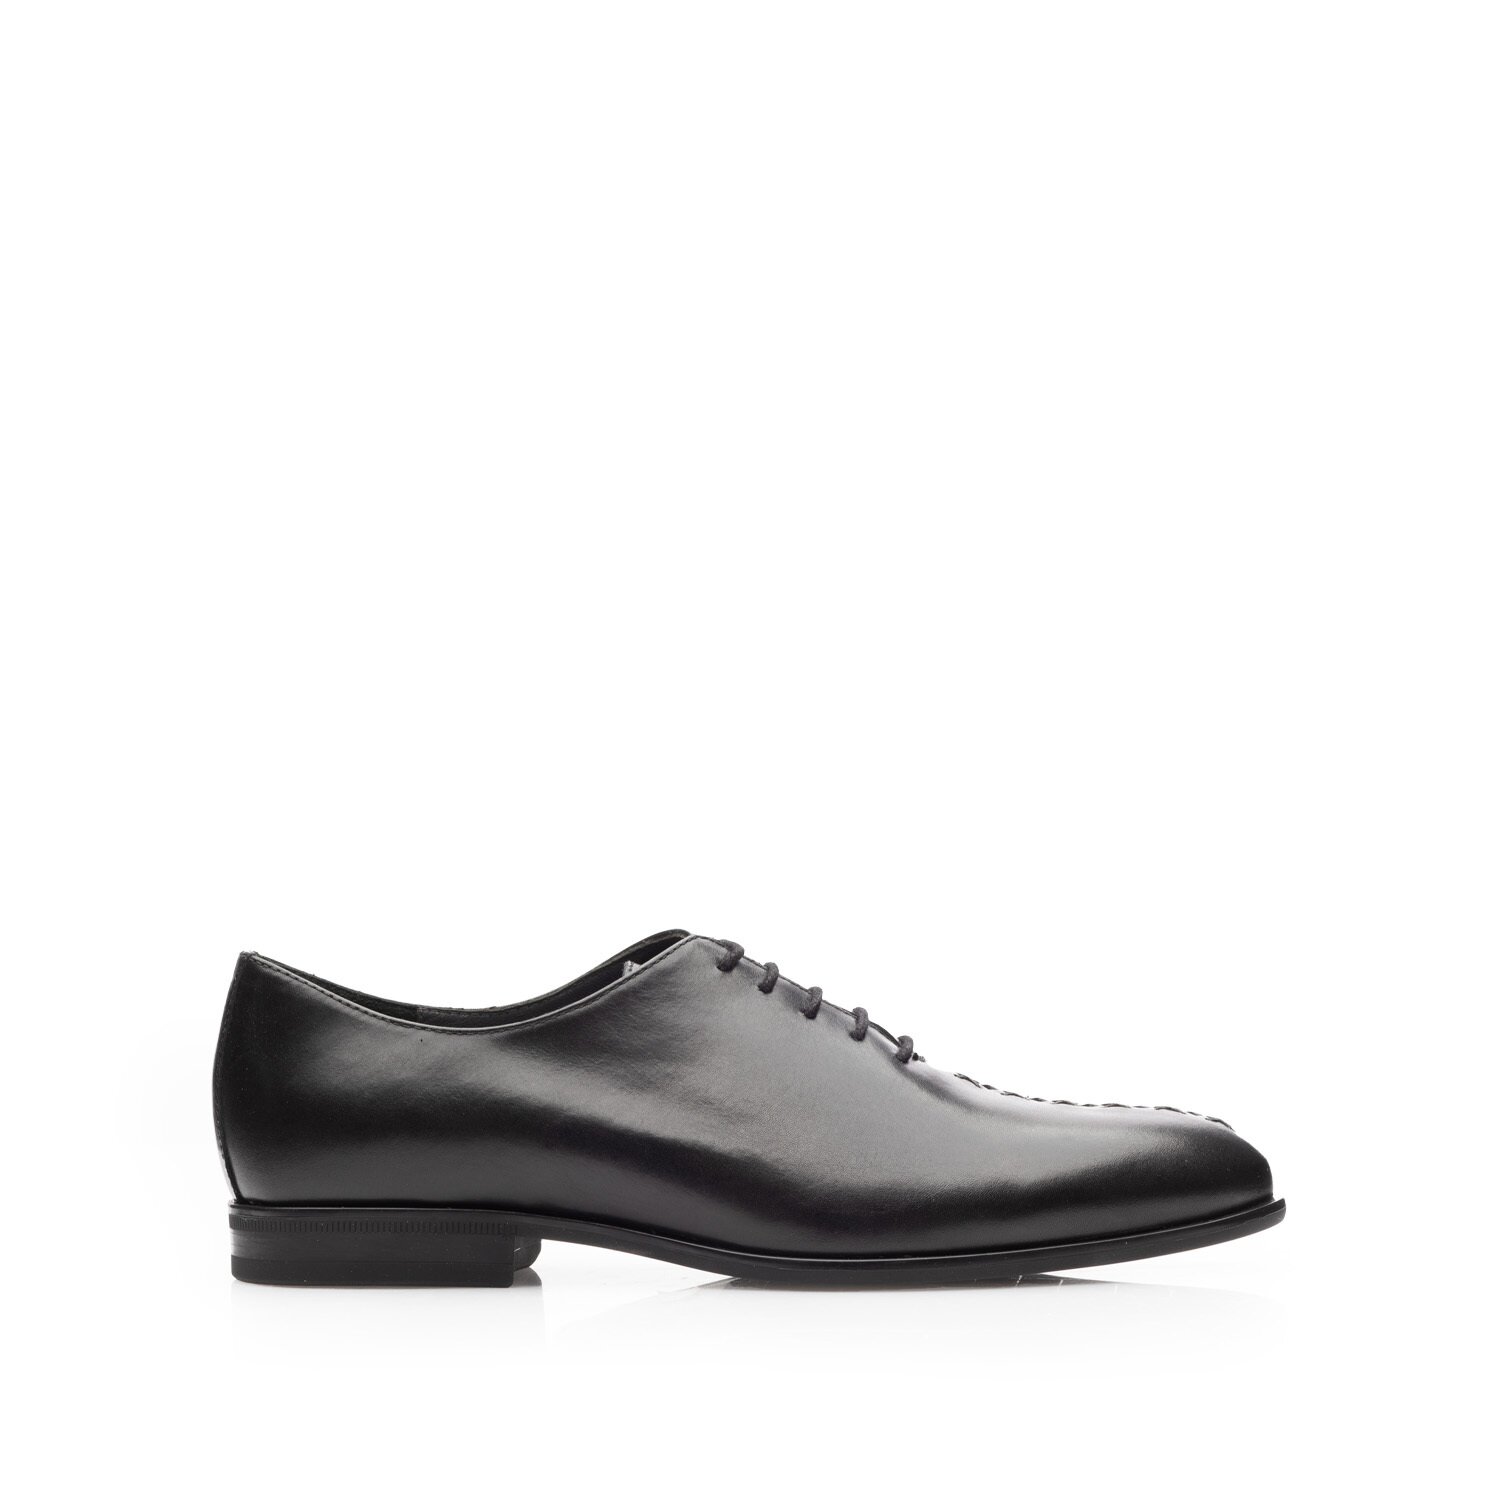 Pantofi eleganți bărbați din piele naturală, Leofex - Mostră 976 Negru Box